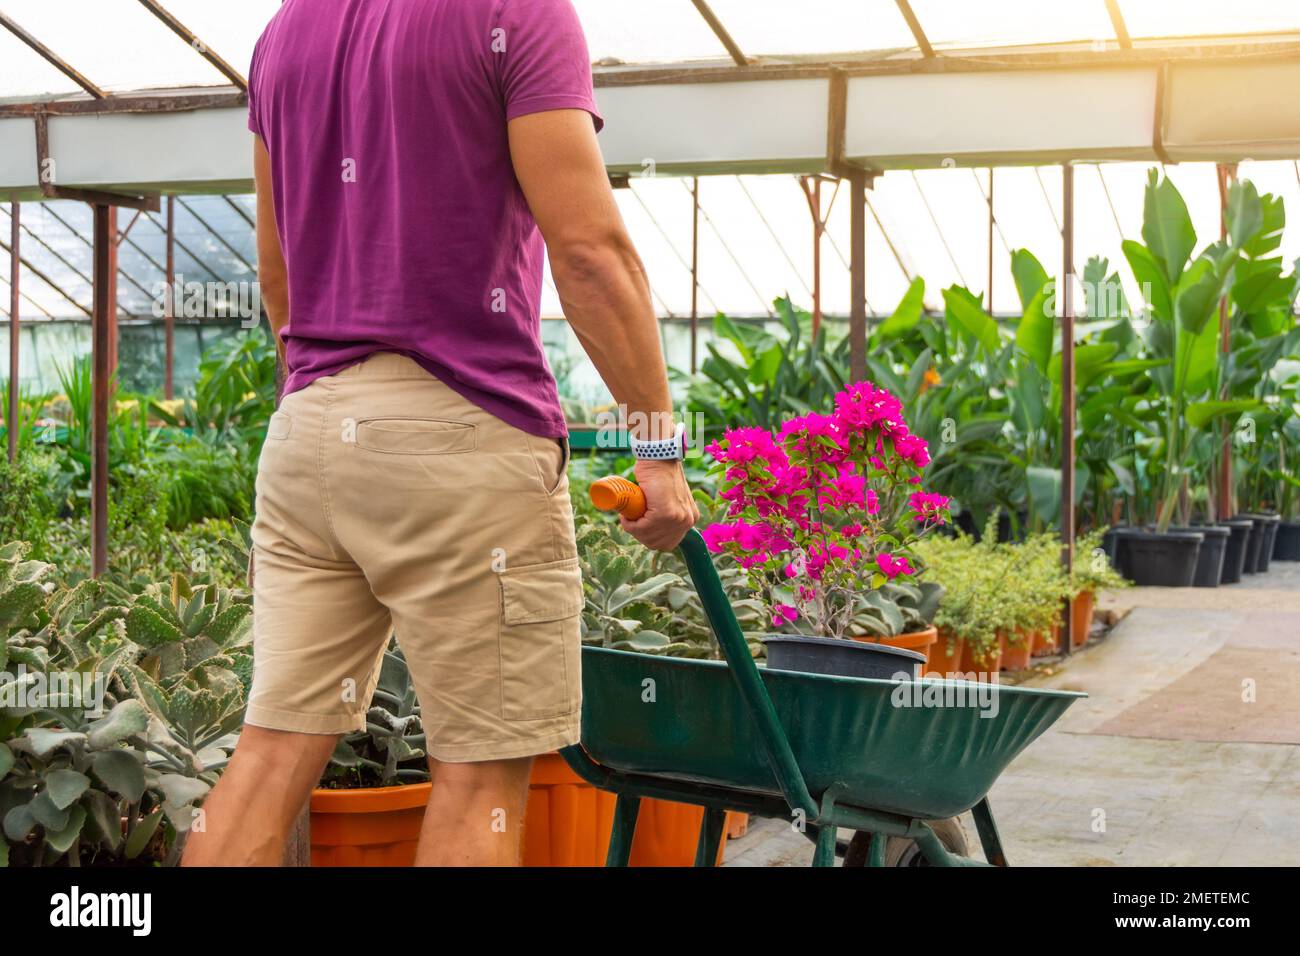 El jardinero masculino en pantalones cortos transporta un arbusto de buganvillas en flor en el invernadero. Cuidado y cultivo de plantas a escala industrial Foto de stock